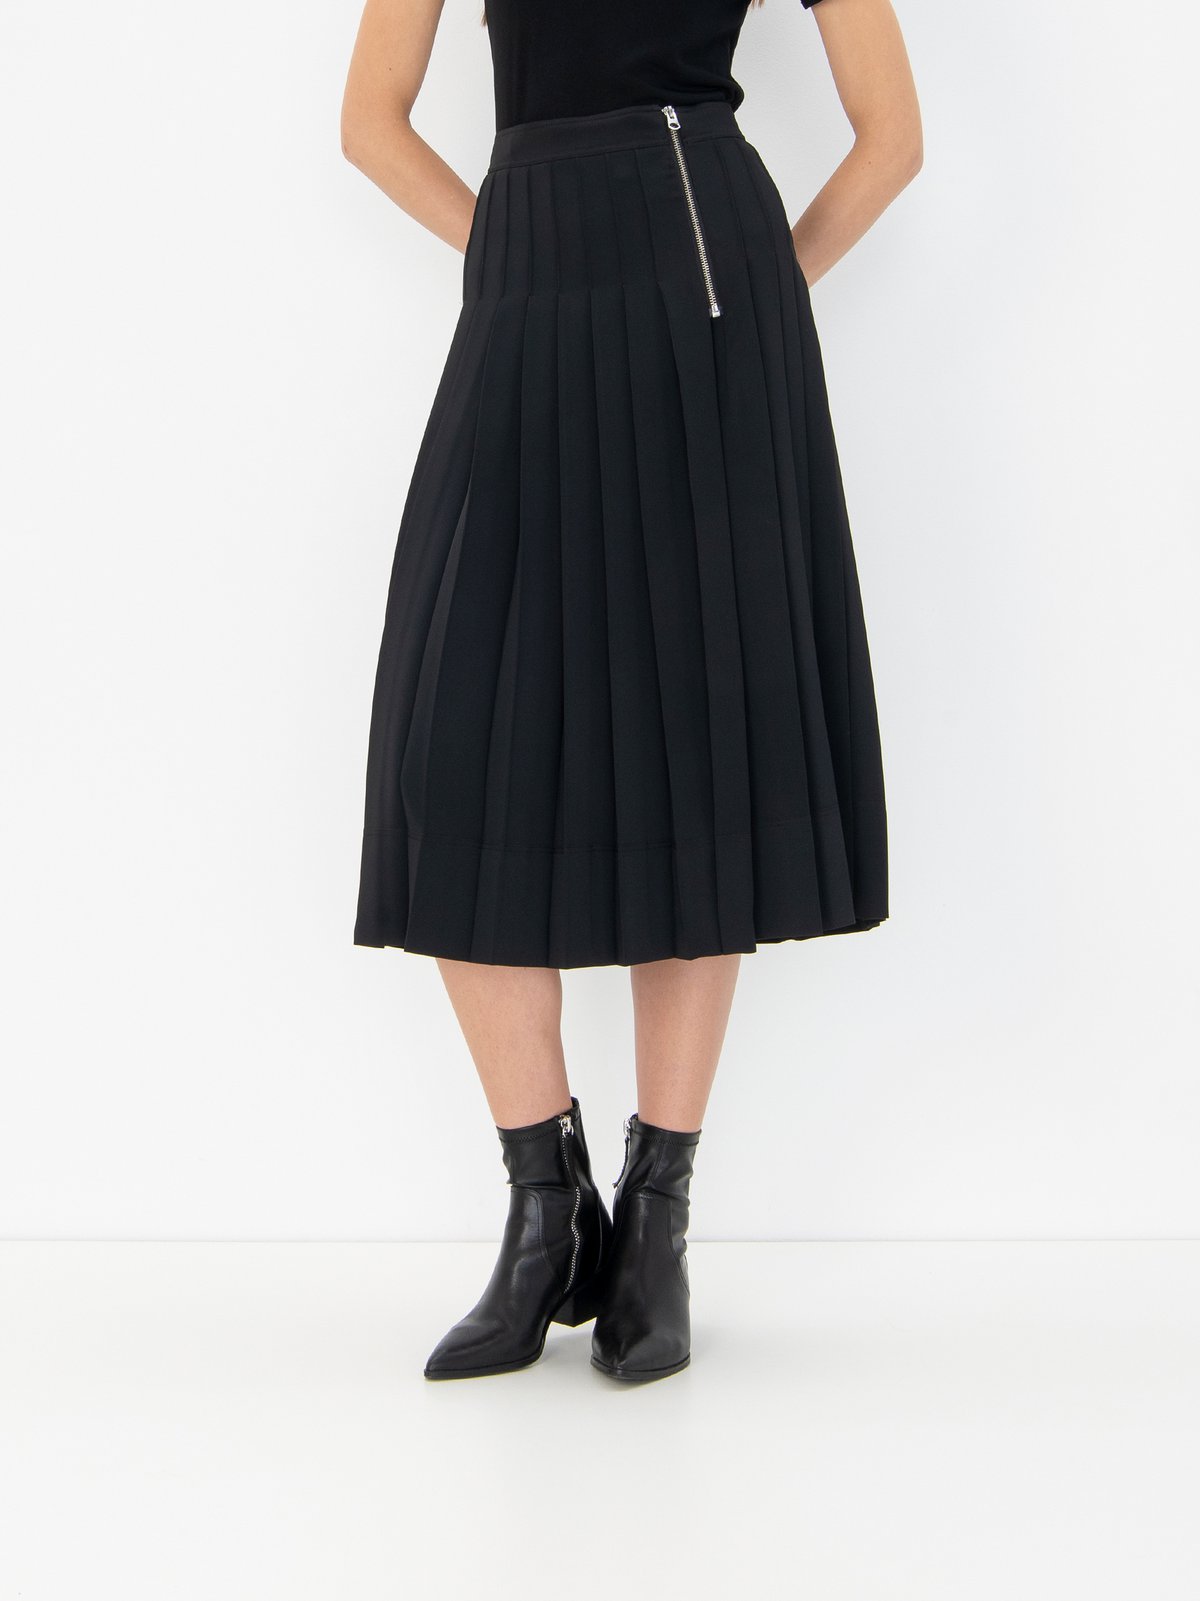 Women's skirt black Calvin Klein